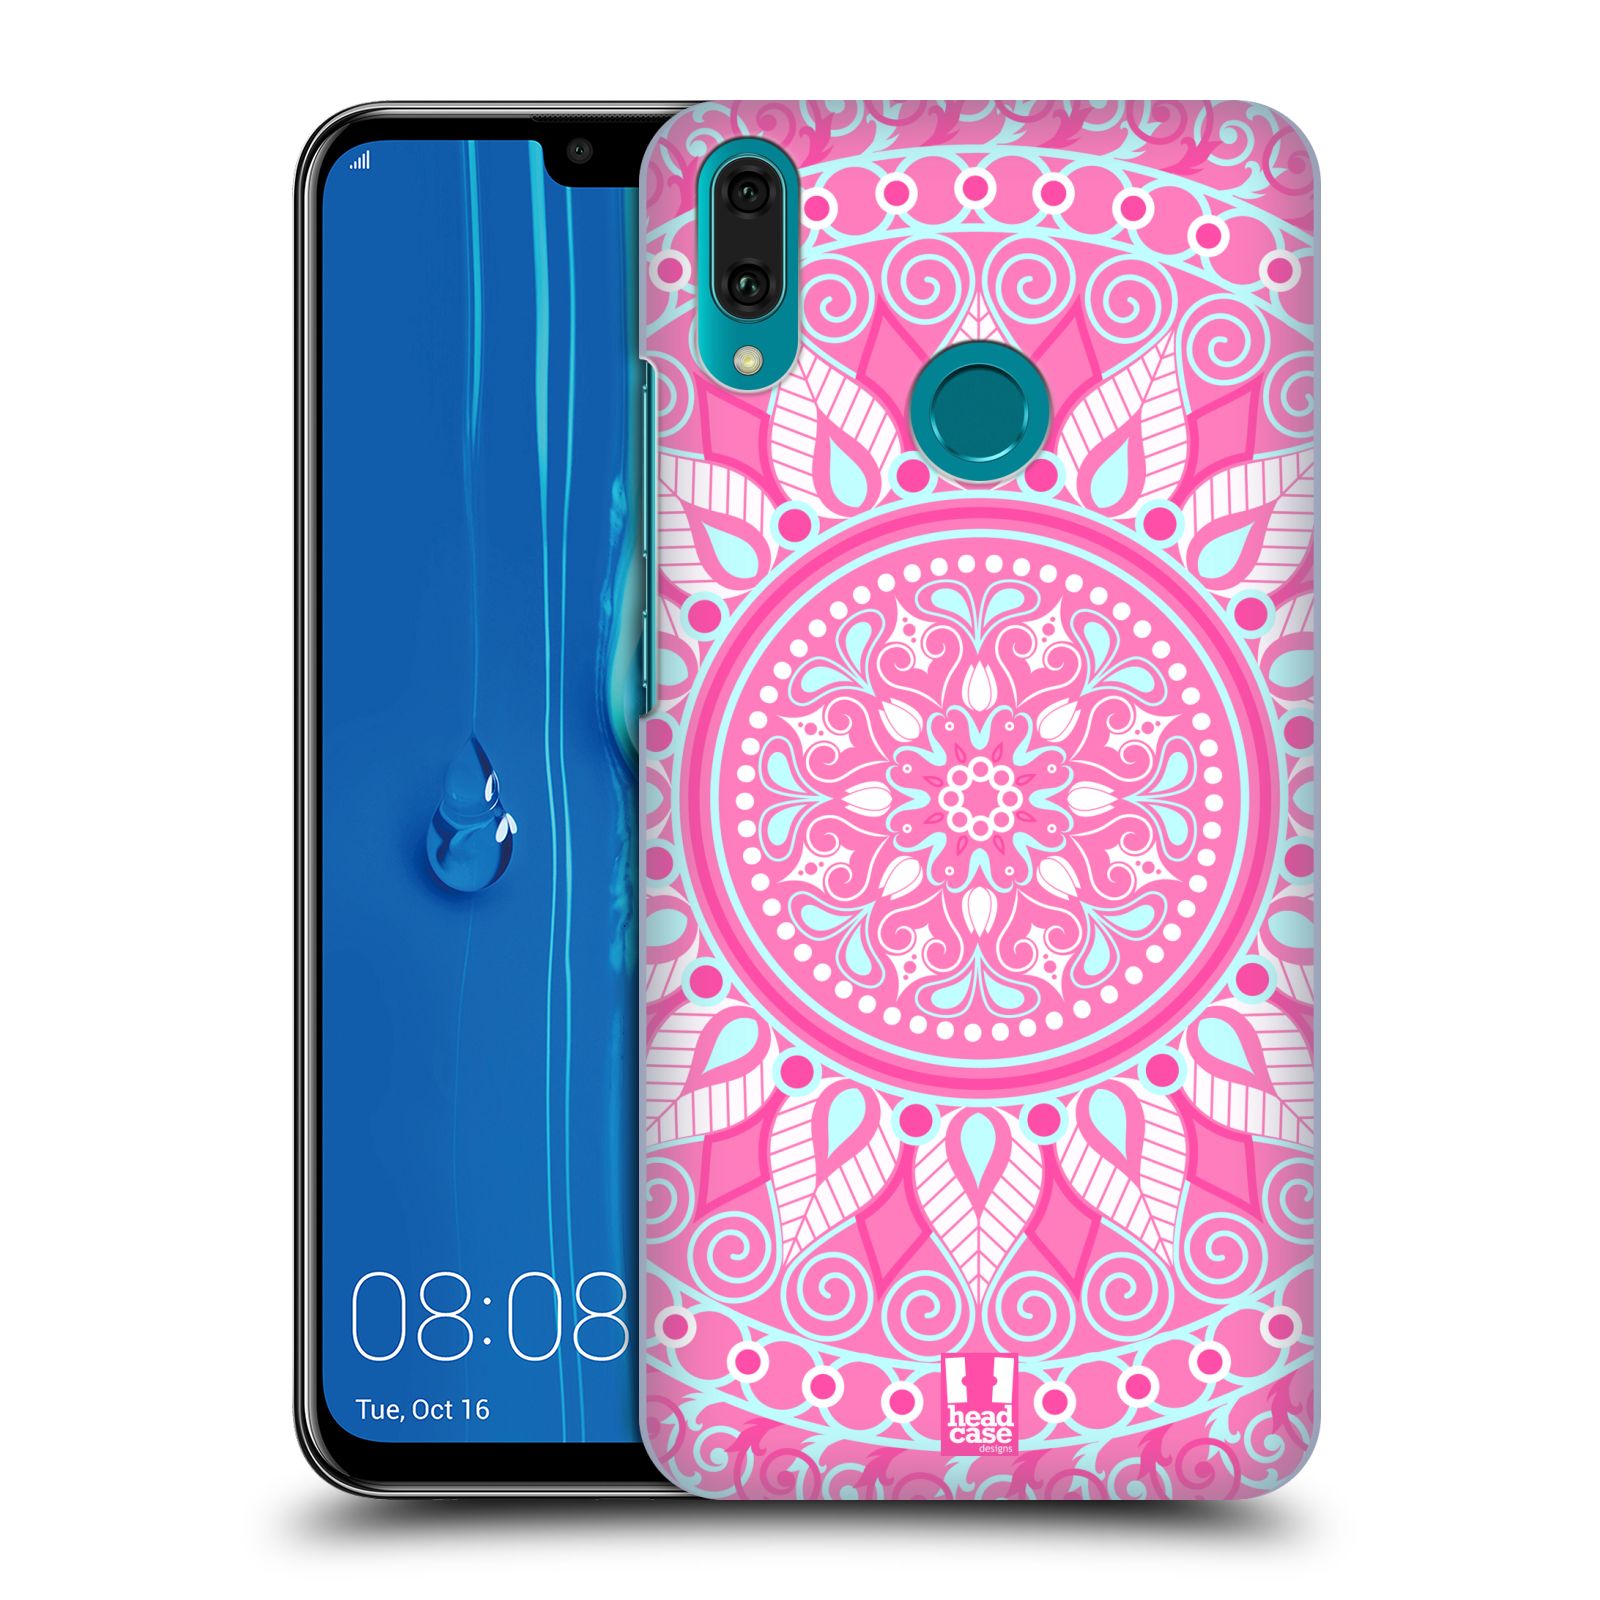 Pouzdro na mobil Huawei Y9 2019 - HEAD CASE - vzor Indie Mandala slunce barevný motiv RŮŽOVÁ